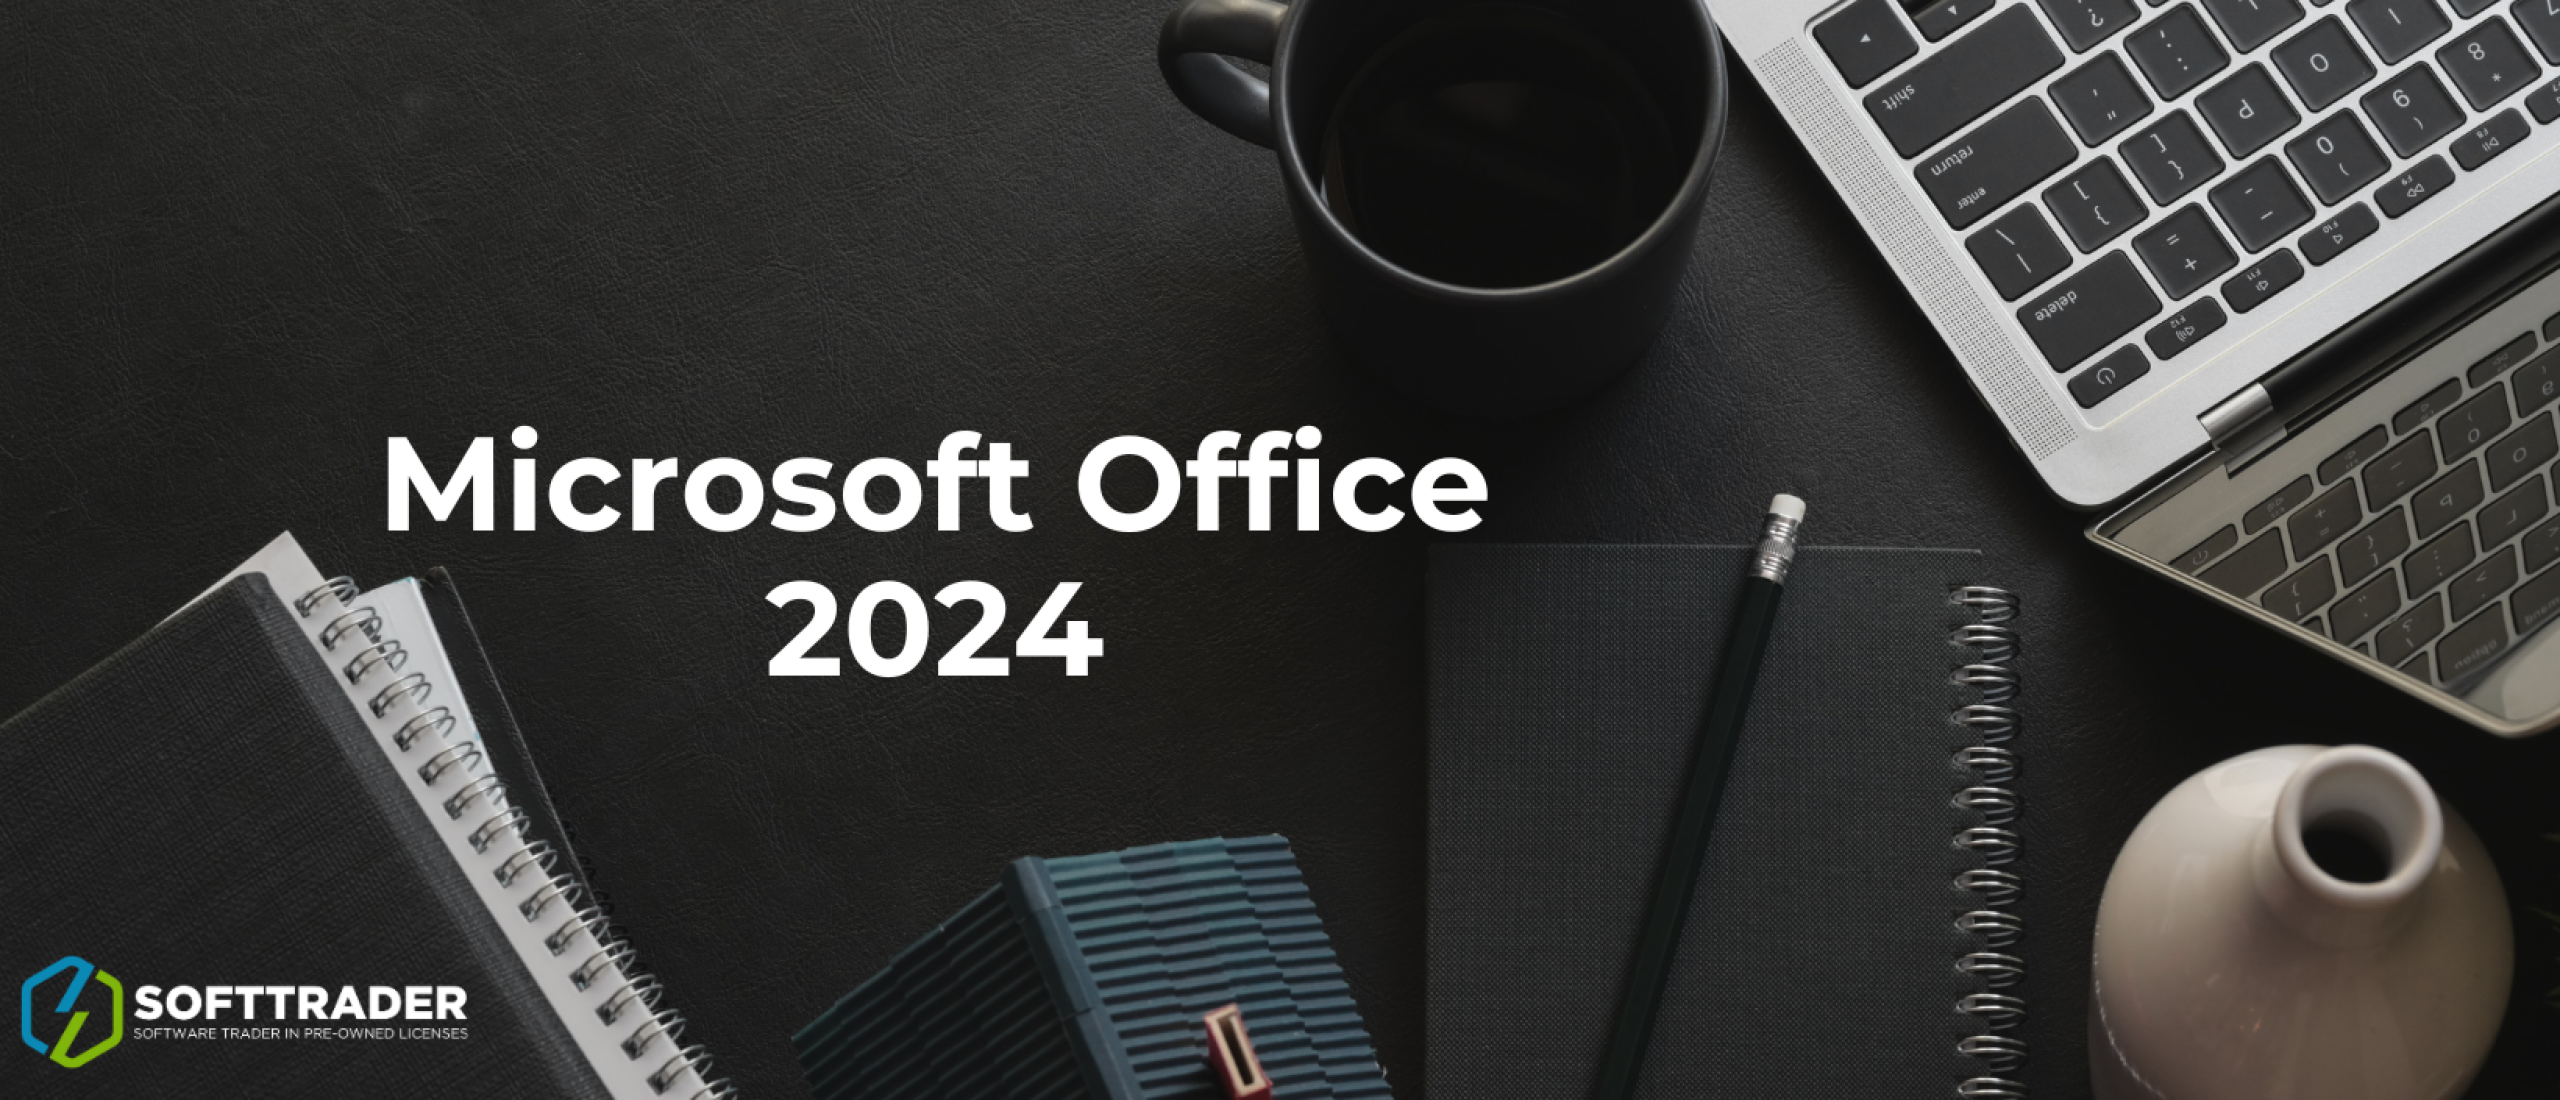 Microsoft Office 2024: Preview-Build und neue Ergänzungen